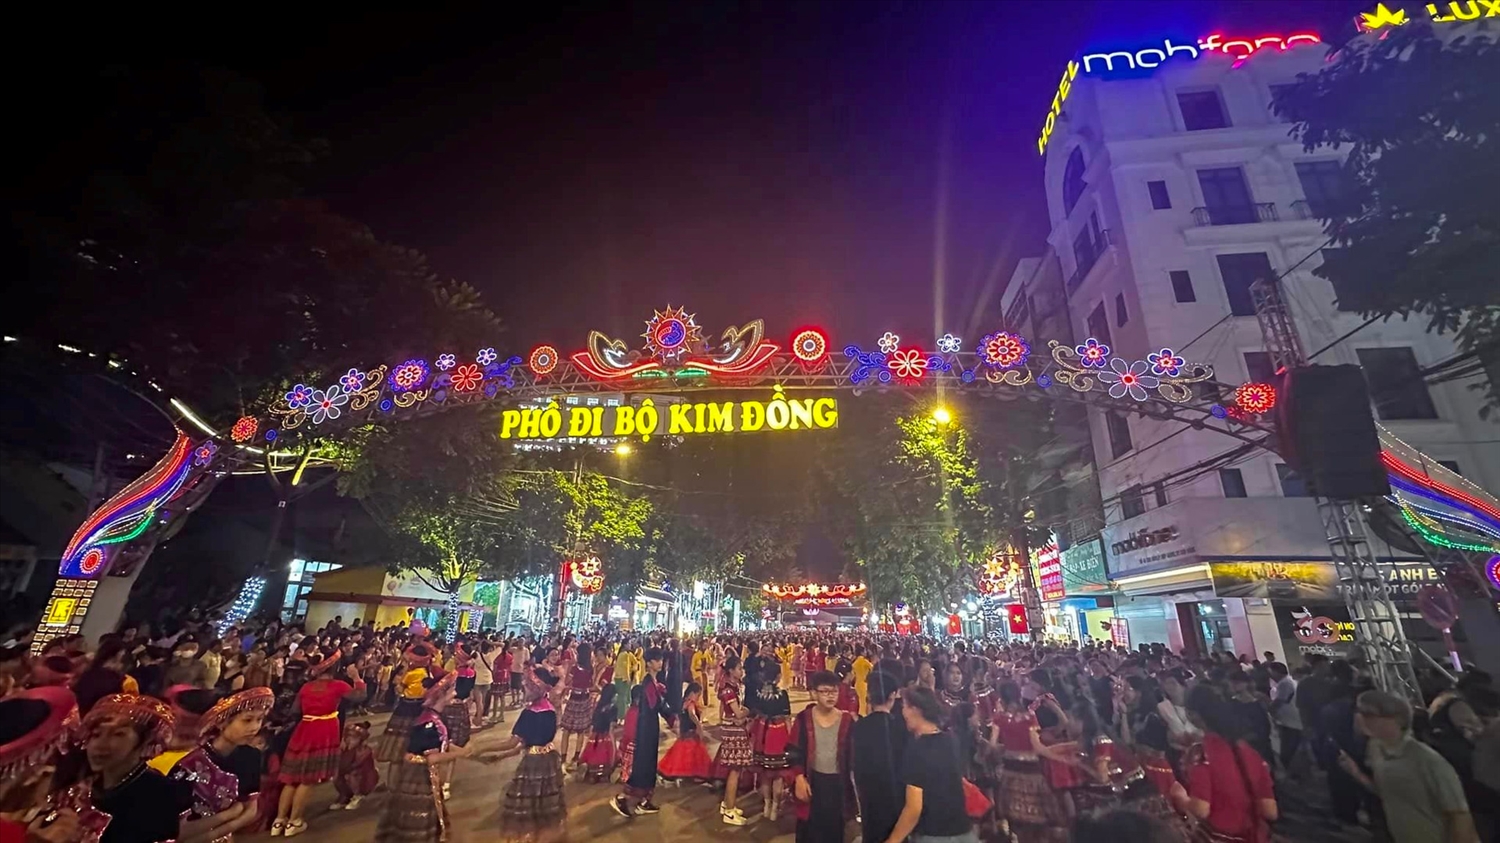 Chủ đề “Vũ điệu miền non nước” của 3.000 diễn viên diễn ra đêm 30/9 tại phố đi bộ Kim Đồng, thành phố Cao Bằng thu hút 3.000 người tham gia trình diễn vũ điệu thể thao 